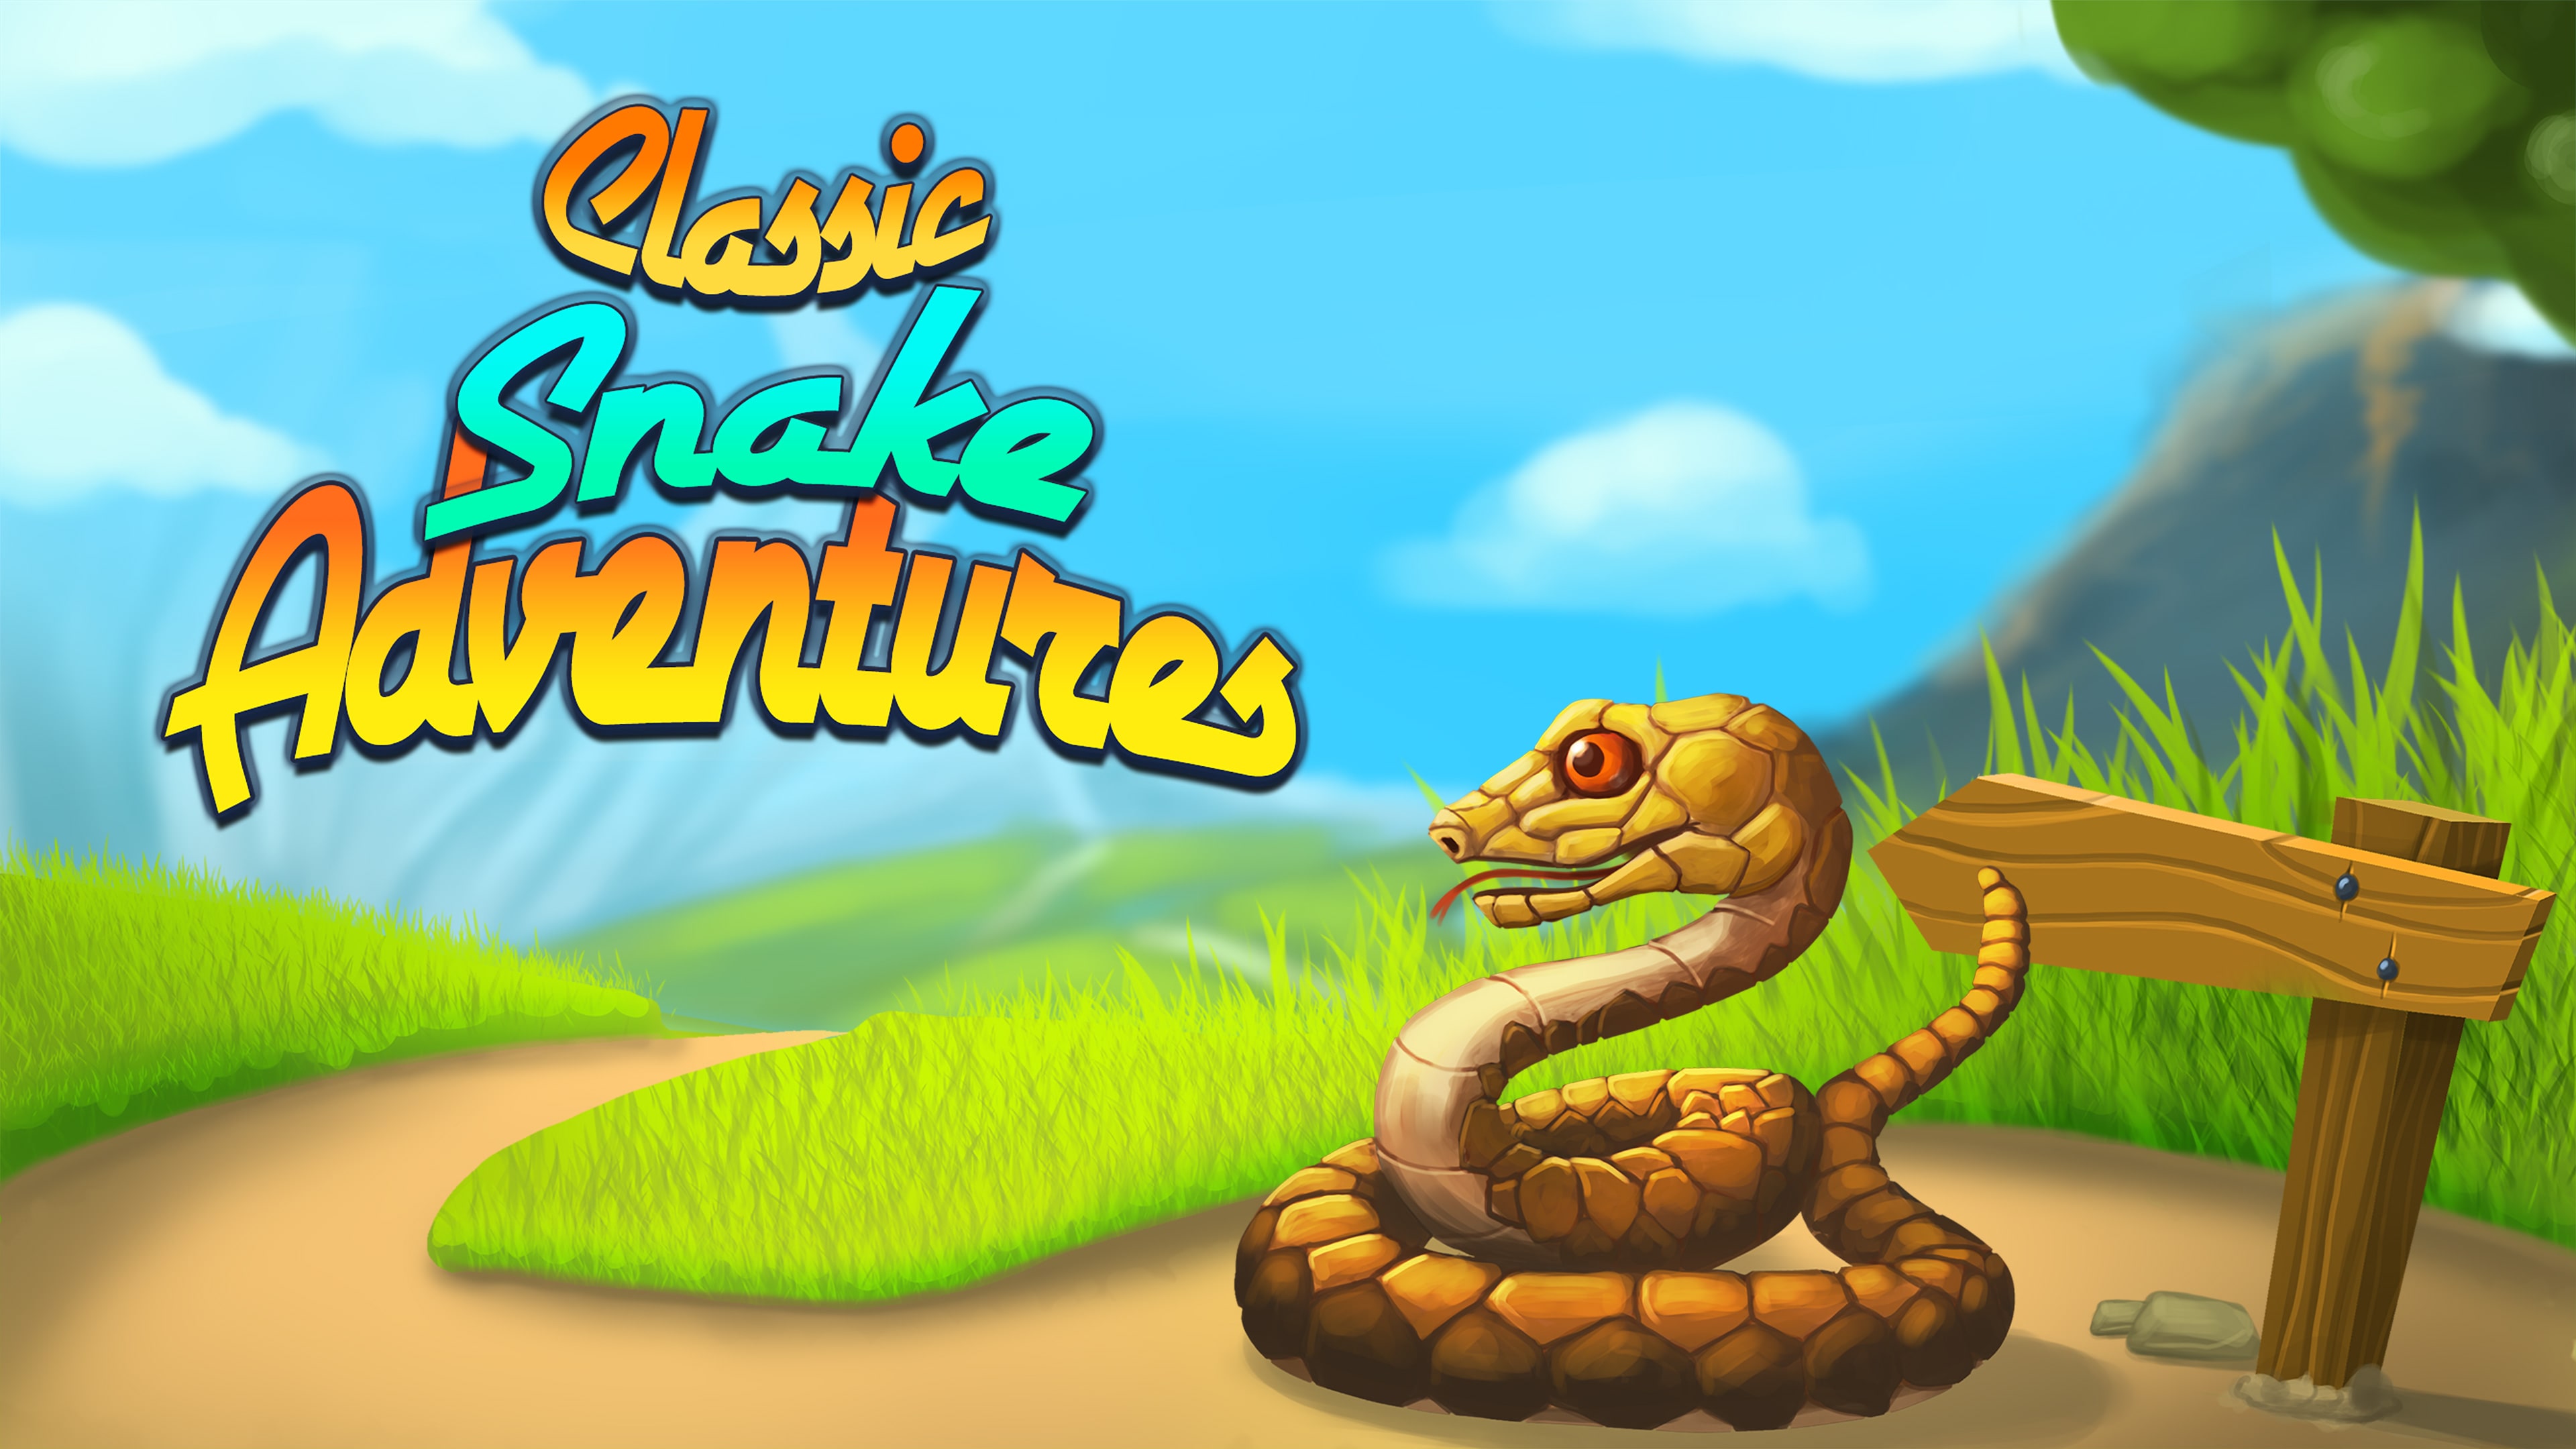 Snake Retro - Serpente Mania - Jogo de cobra clássico  arcade::Appstore for Android